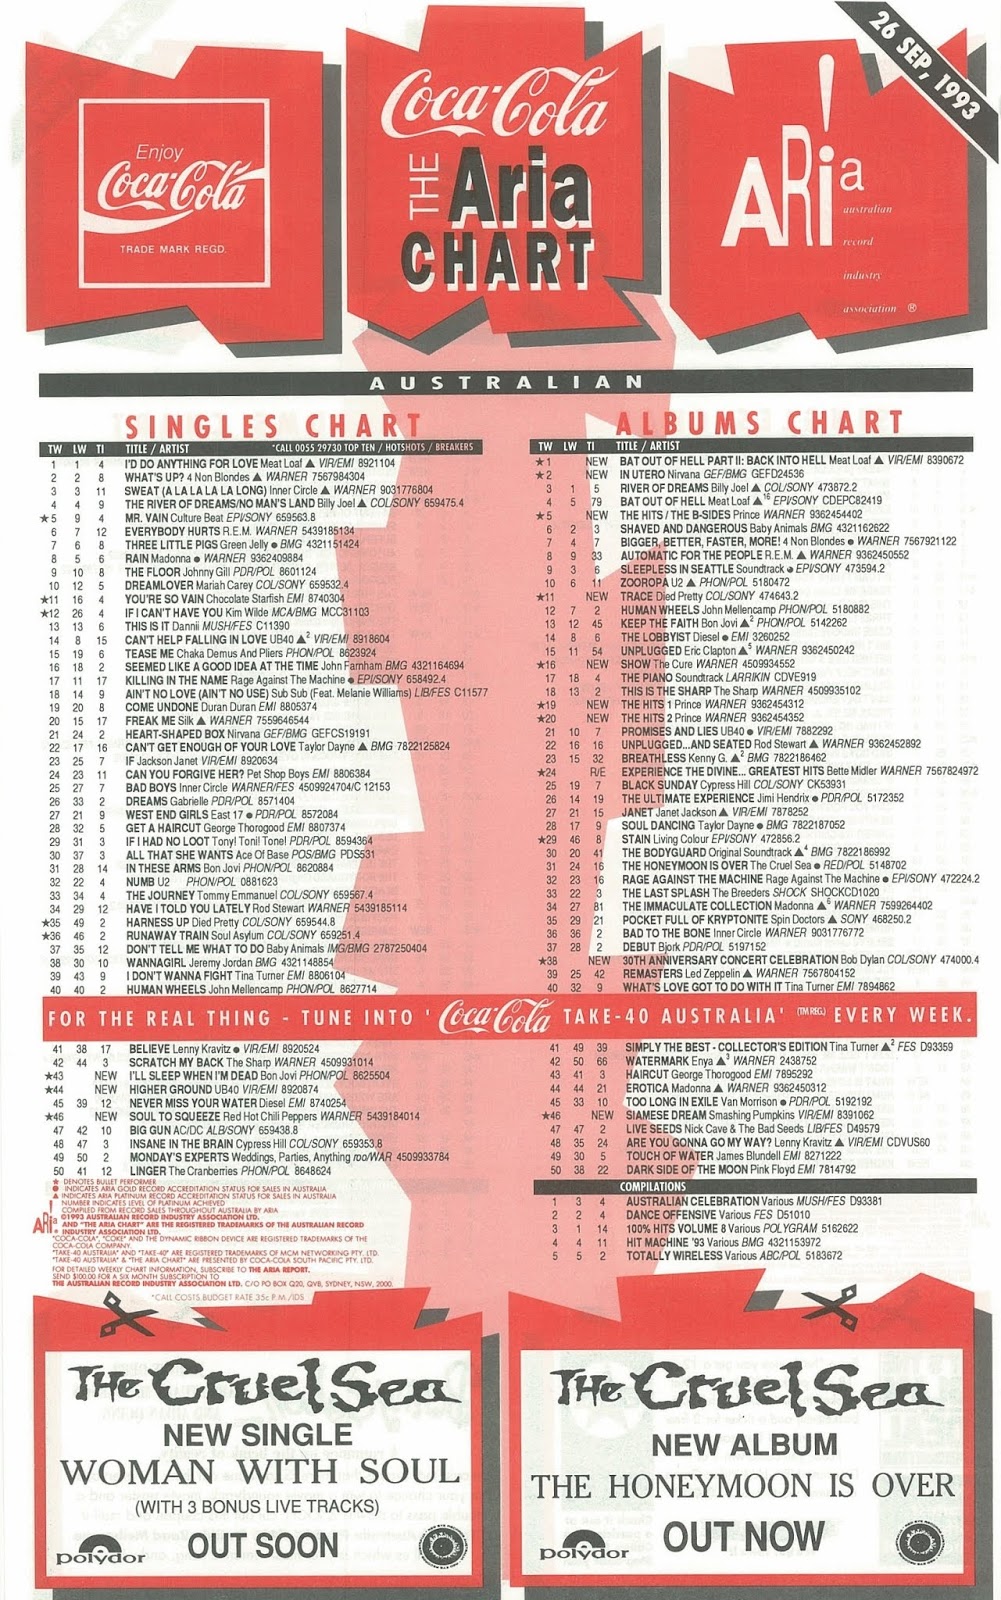 1993 Song Charts